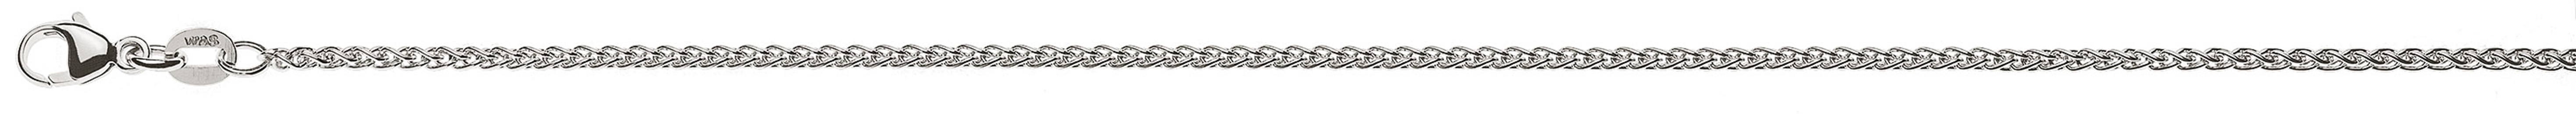 AURONOS Prestige Necklace white gold 18K cable chain 45cm 1.65mm